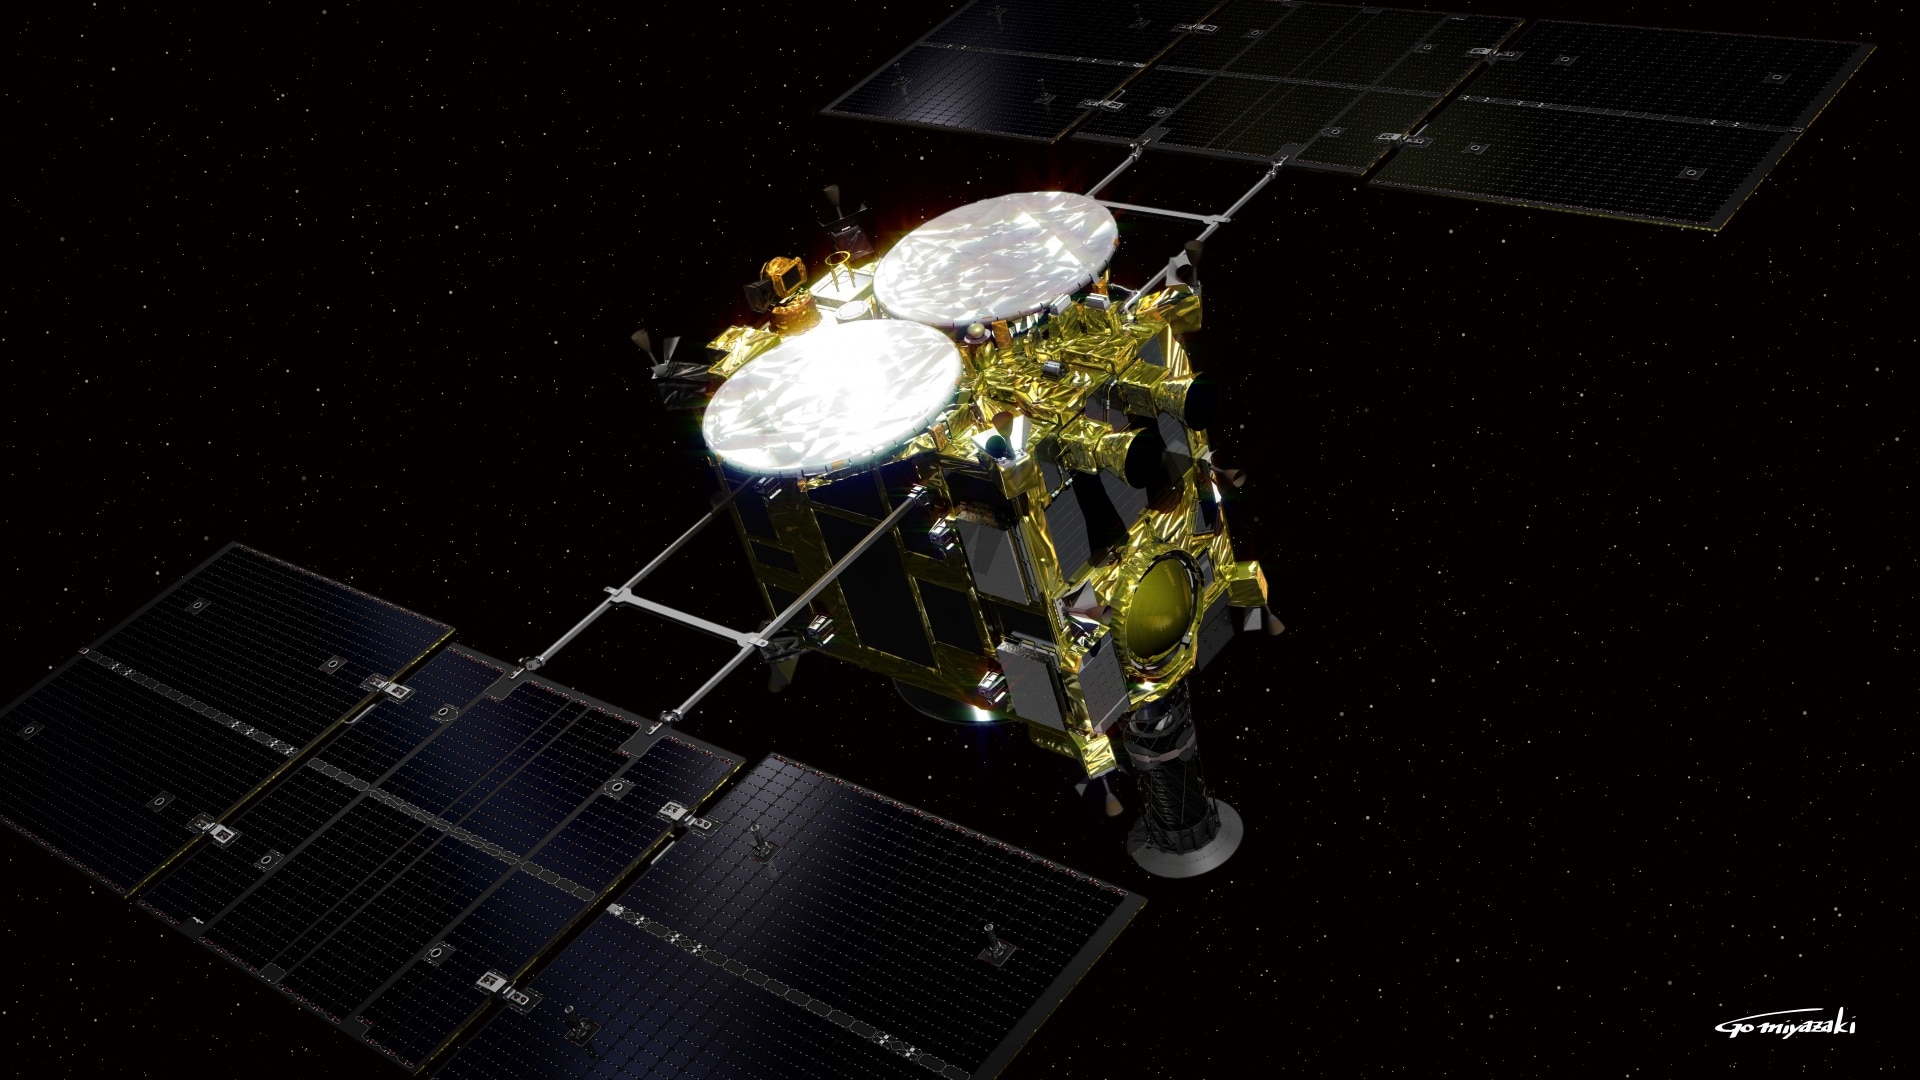 Hayabusa2 ha aterrizado en el asteroide Ryugu